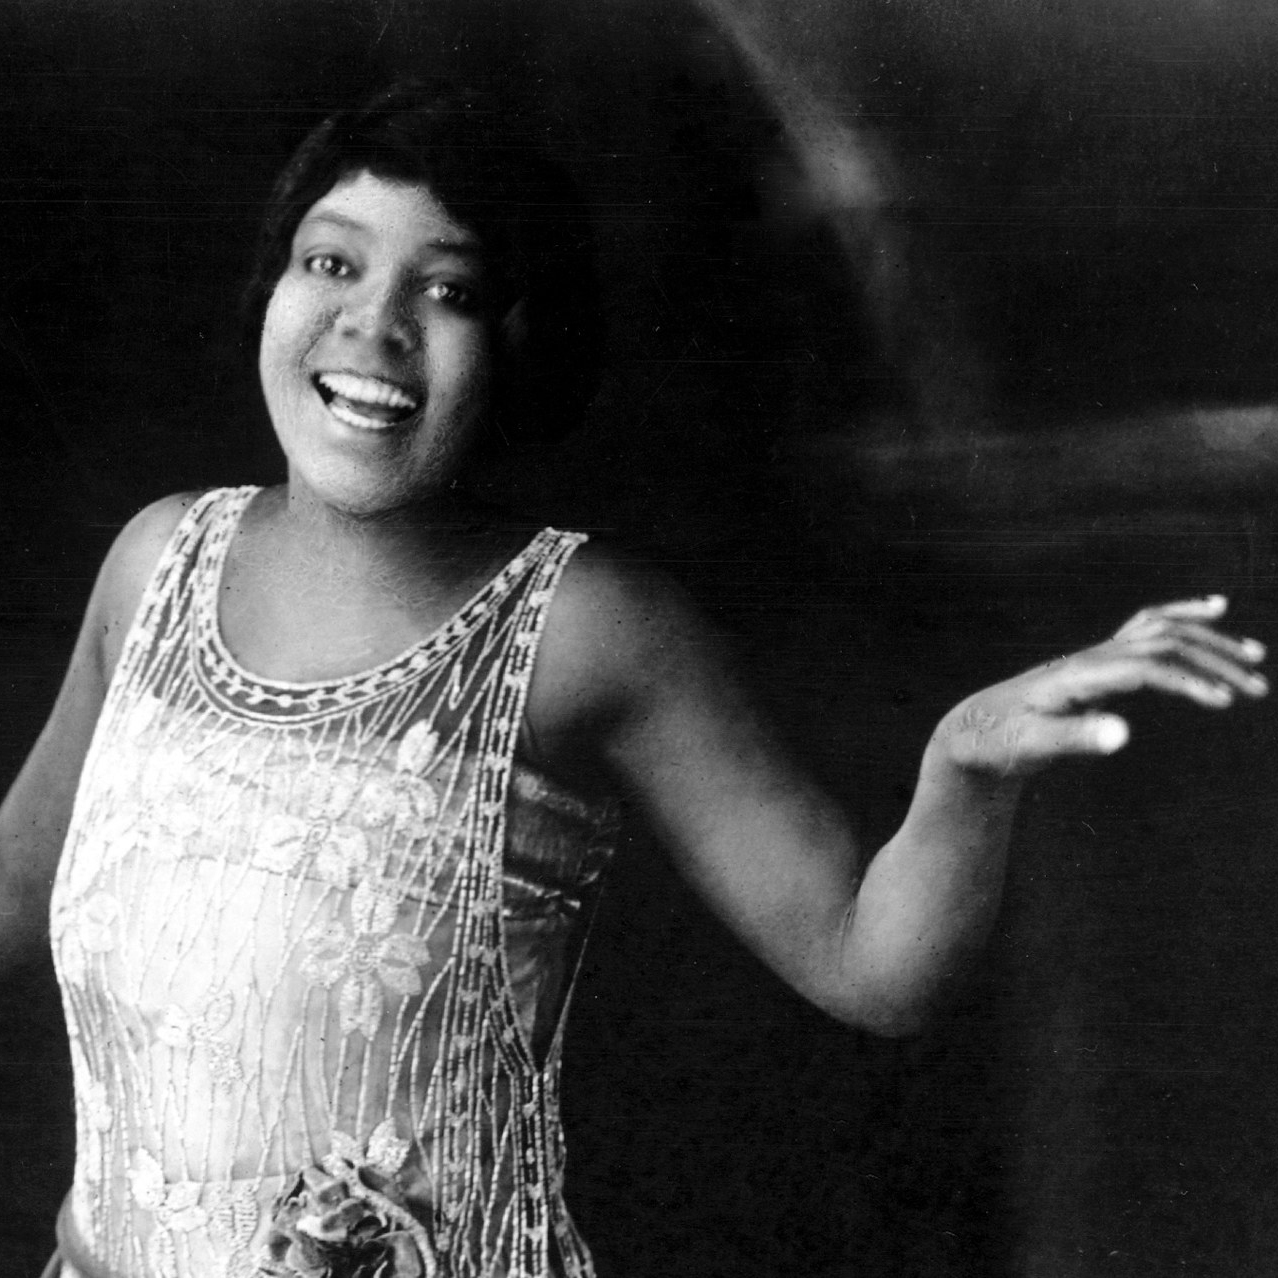 "Realmente solo una escritora como Jackie Kay puede hacer justicia (poética) a las cualidades de Bessie Smith como cantante. Comparte con ella una extrema sensibilidad para el tono, esa capacidad de hechizarnos y de hacer suyas las palabras, cargándolas de fuerza y significado, haciendo que cuenten su propia historia".

Bruno Padilla del Valle reseña "Bessie Smith", de @jackiekaypoet (@alphadecay_editorial, 2022), en nuestra sección de Horas Críticas.

#AlphaDecay #BessieSmith #Biografía #blues #Feminismo #Historia #JackieKay #Música #poesía

https://www.revistamercurio.es/2022/09/29/bessie-smith-jackie-kay/